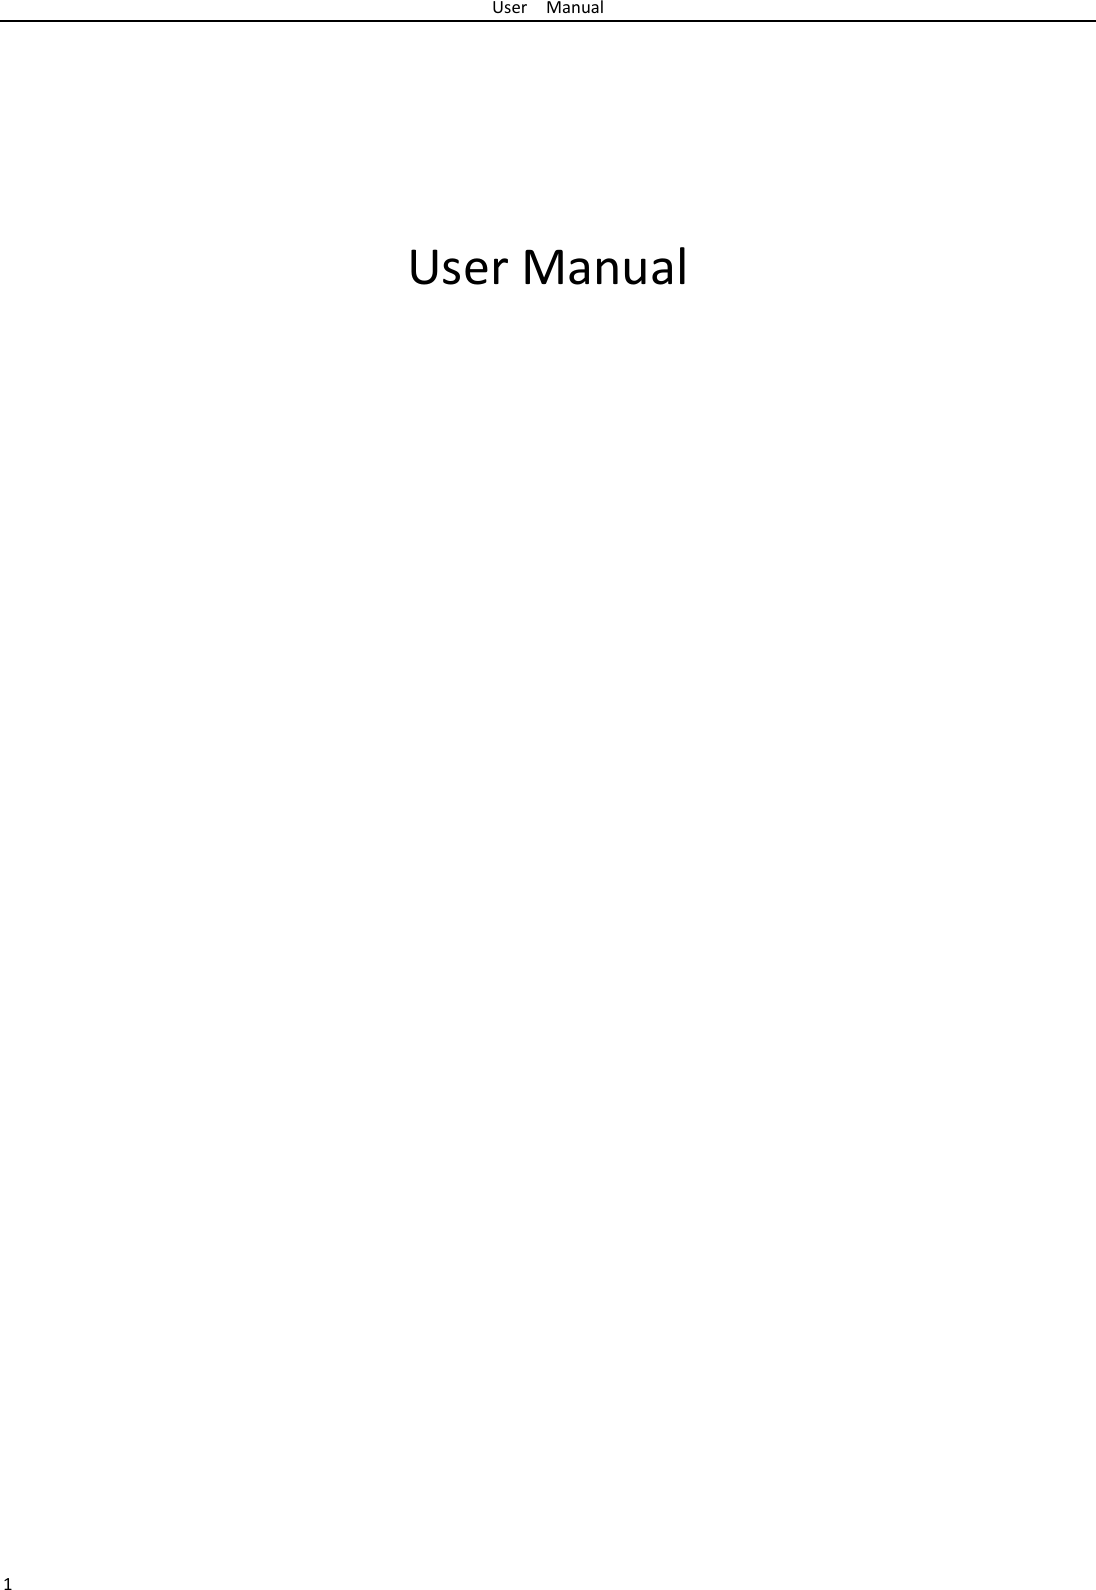 UserManual1UserManual